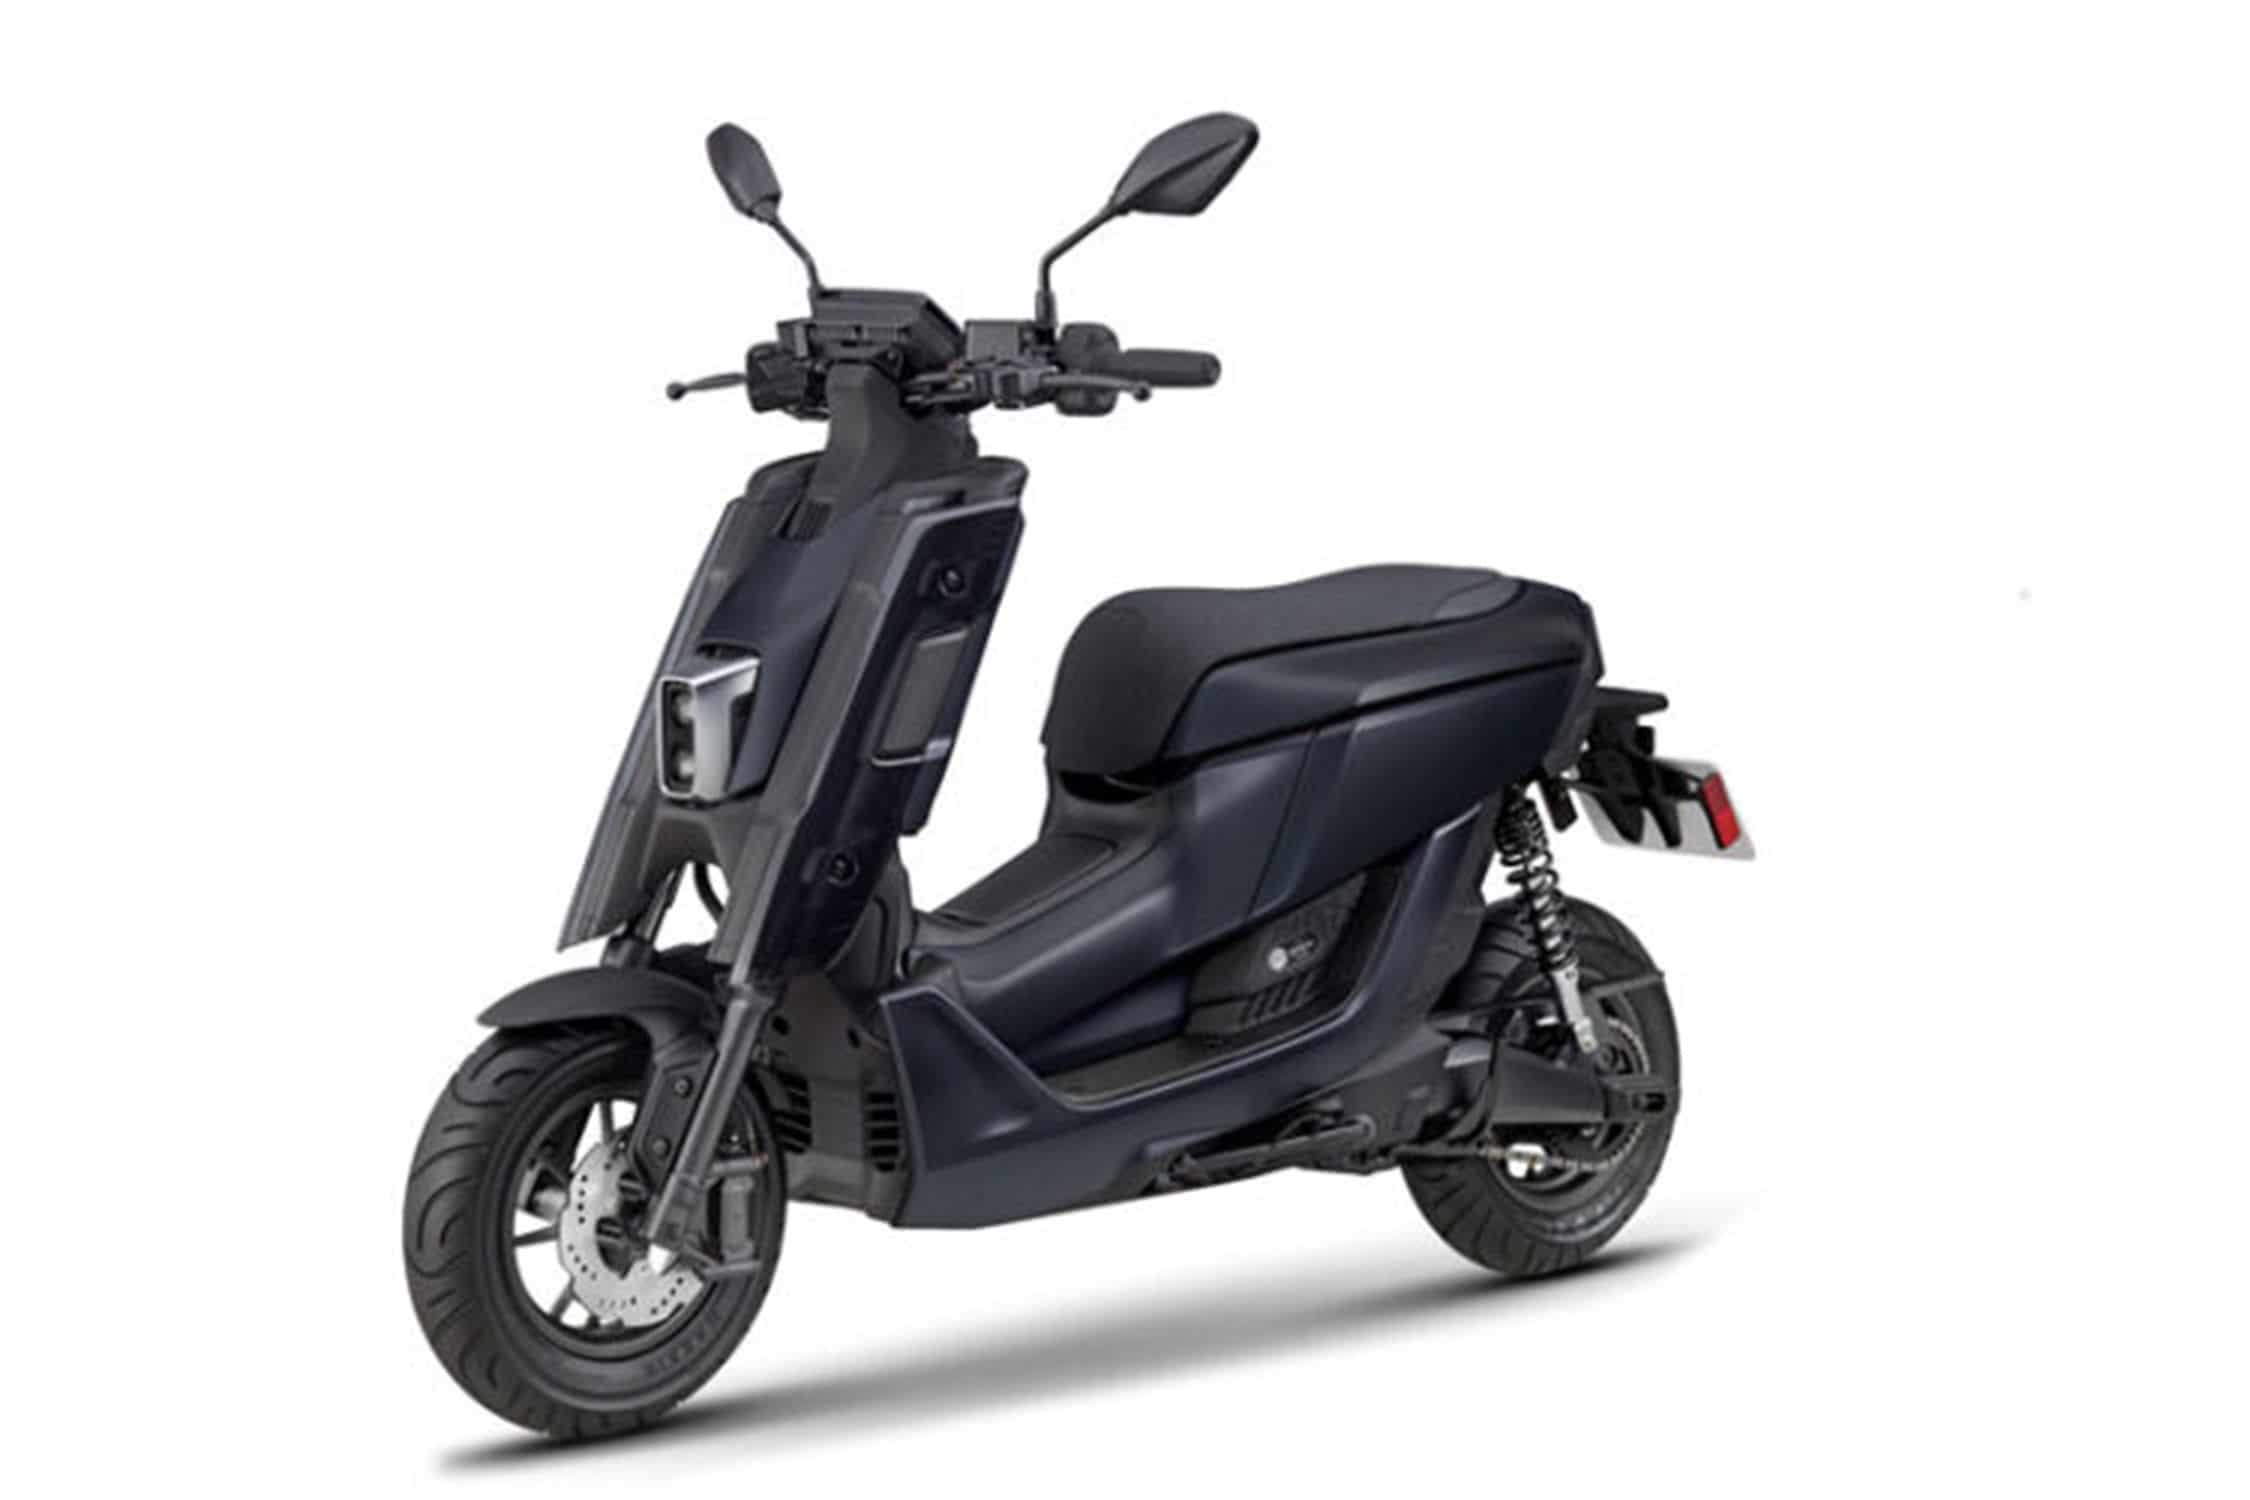 Yamaha lance un scooter électrique à batterie interchangeable - MotorGreen